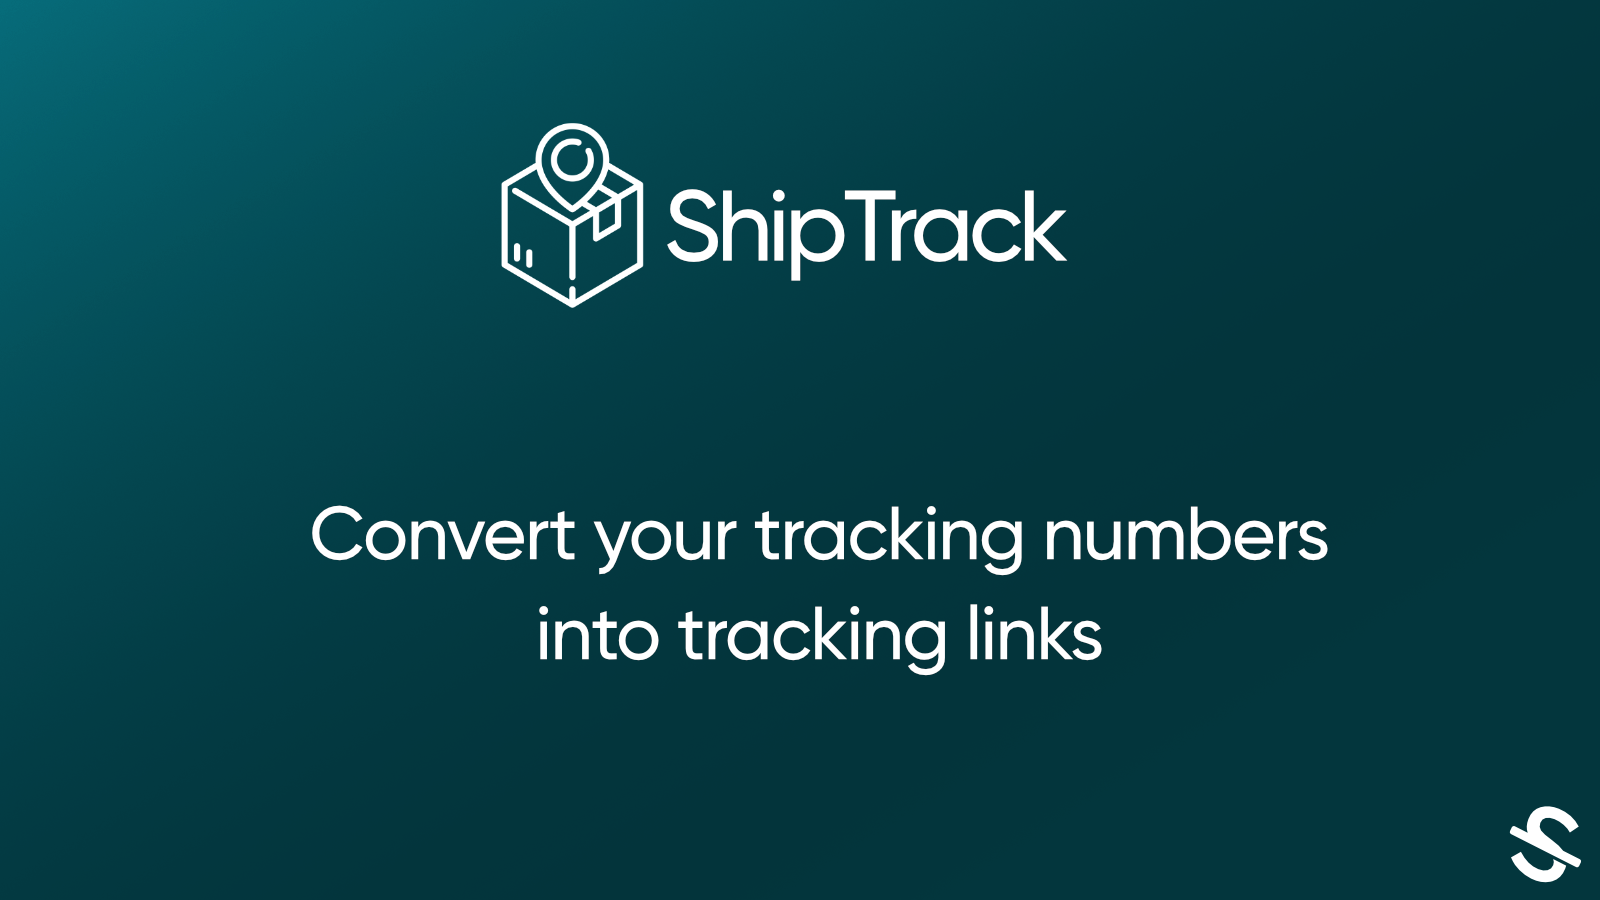 Converta seus números de rastreamento em links de rastreamento